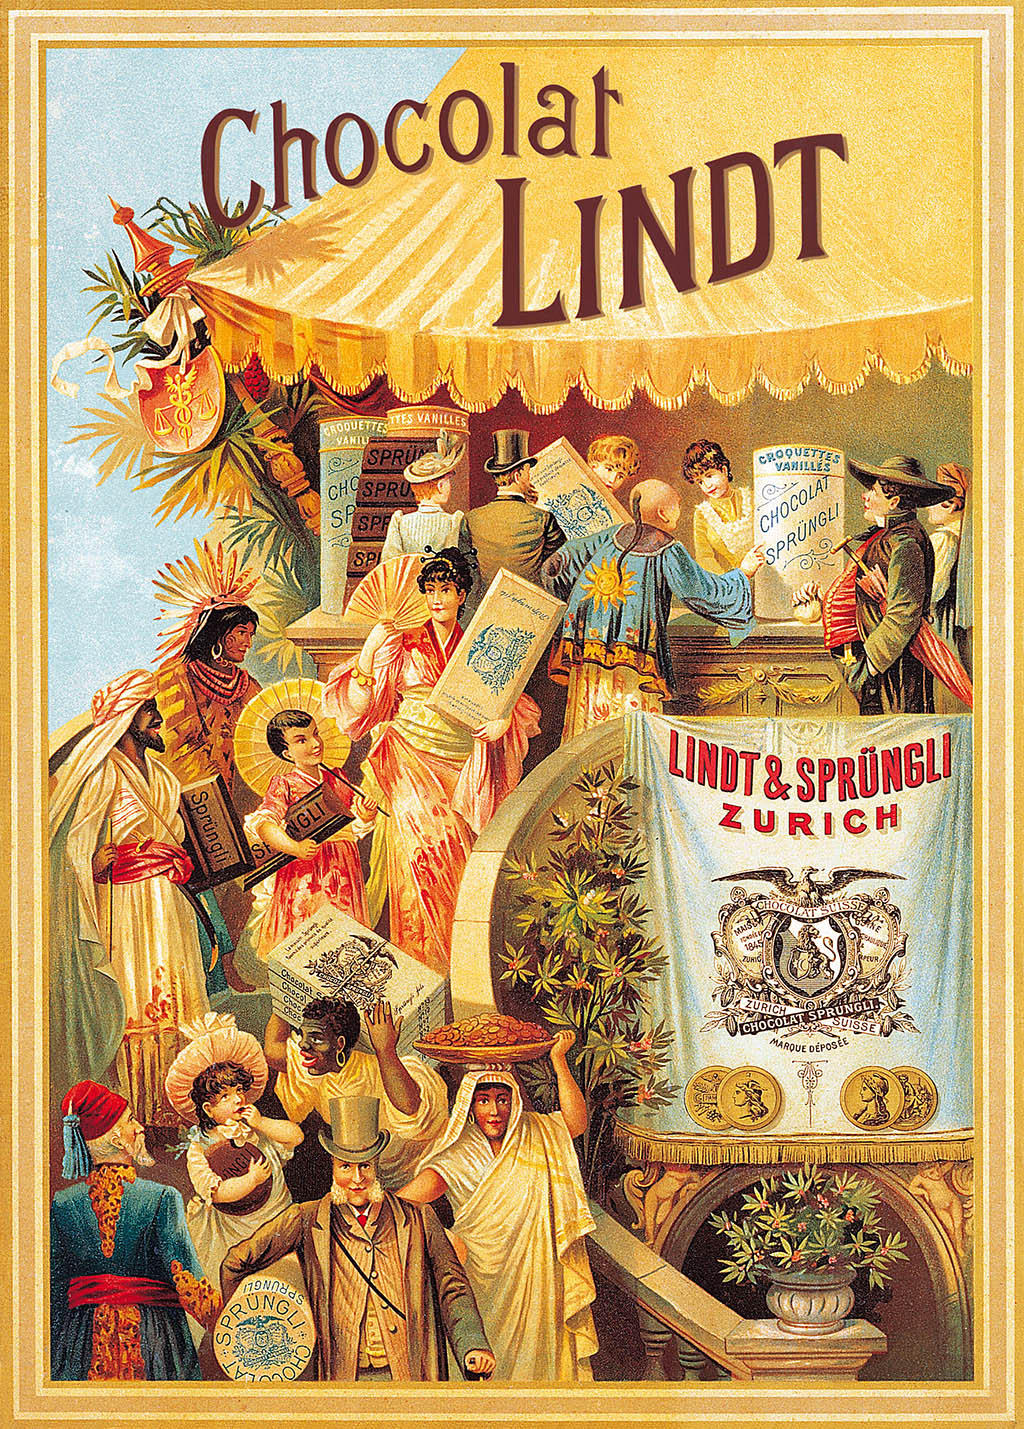 poster from Lindt und Sprüngli